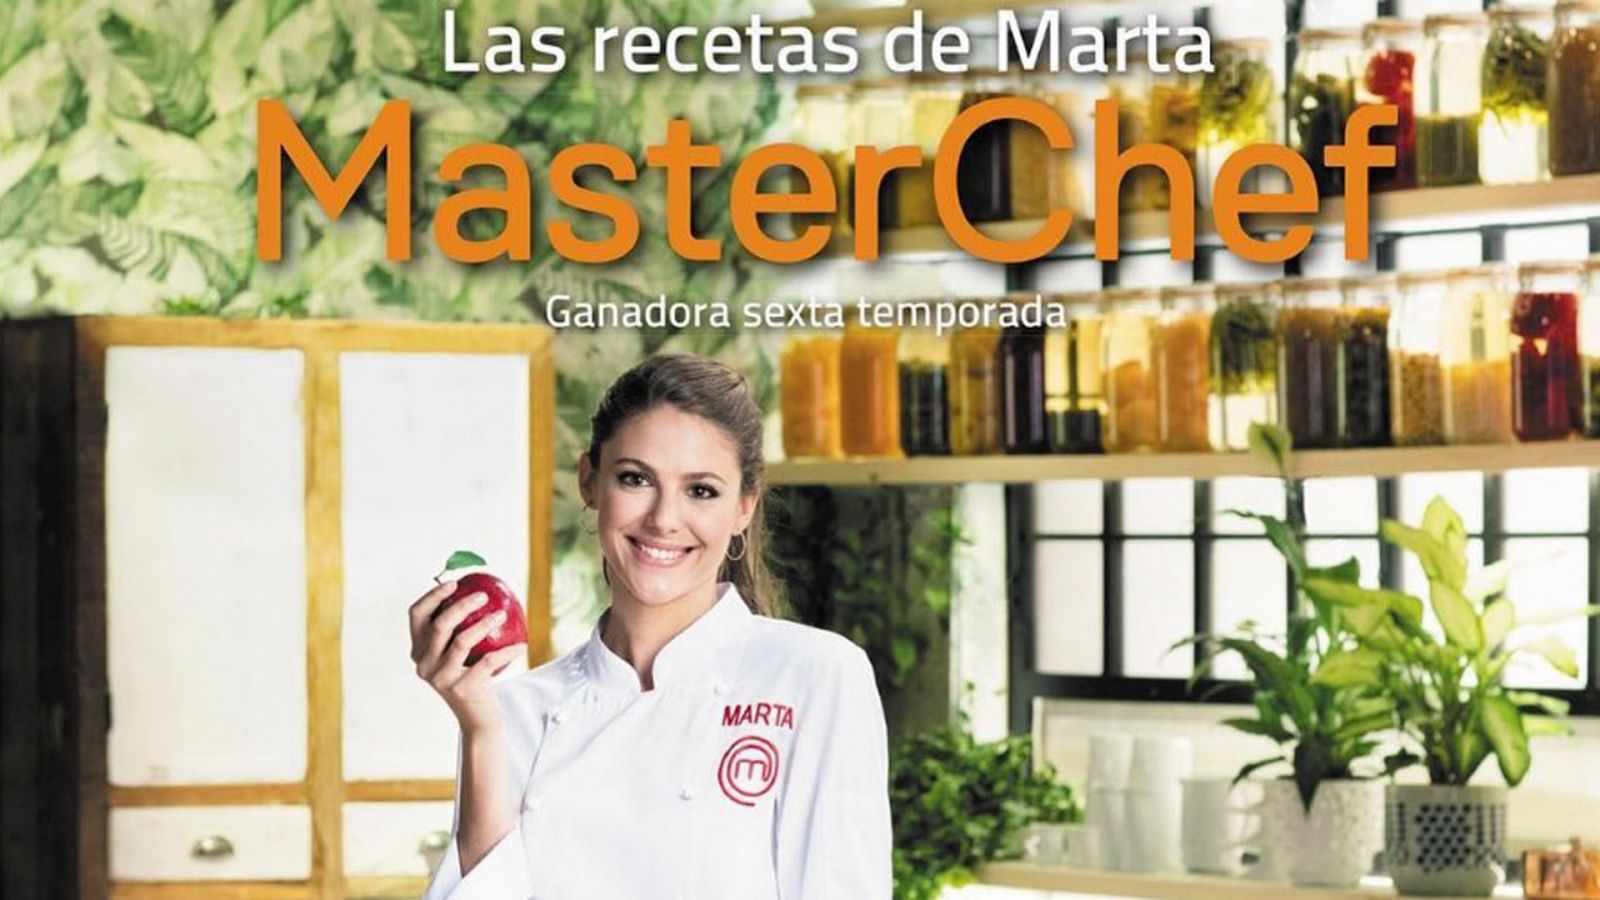 Amigas y Conocidas - Marta, ganadora de Masterchef 6: "Este triunfo me sabe a macarons"